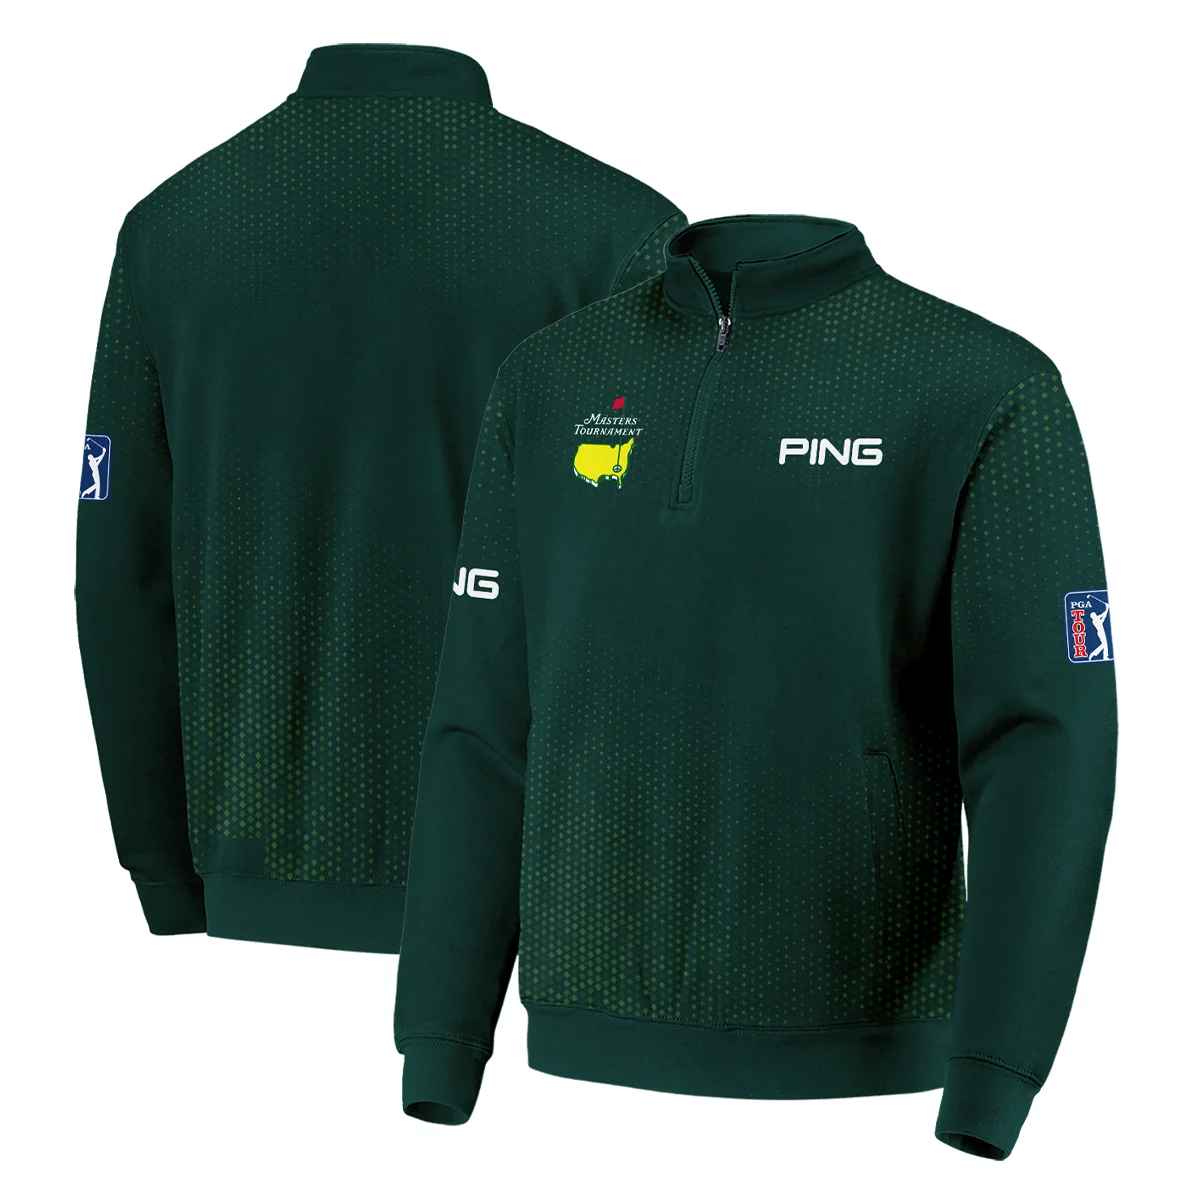 Golf Sport Masters Tournament Ping Zipper Hoodie Shirt Sports Dinamond Shape Dark Green Zipper Hoodie Shirt